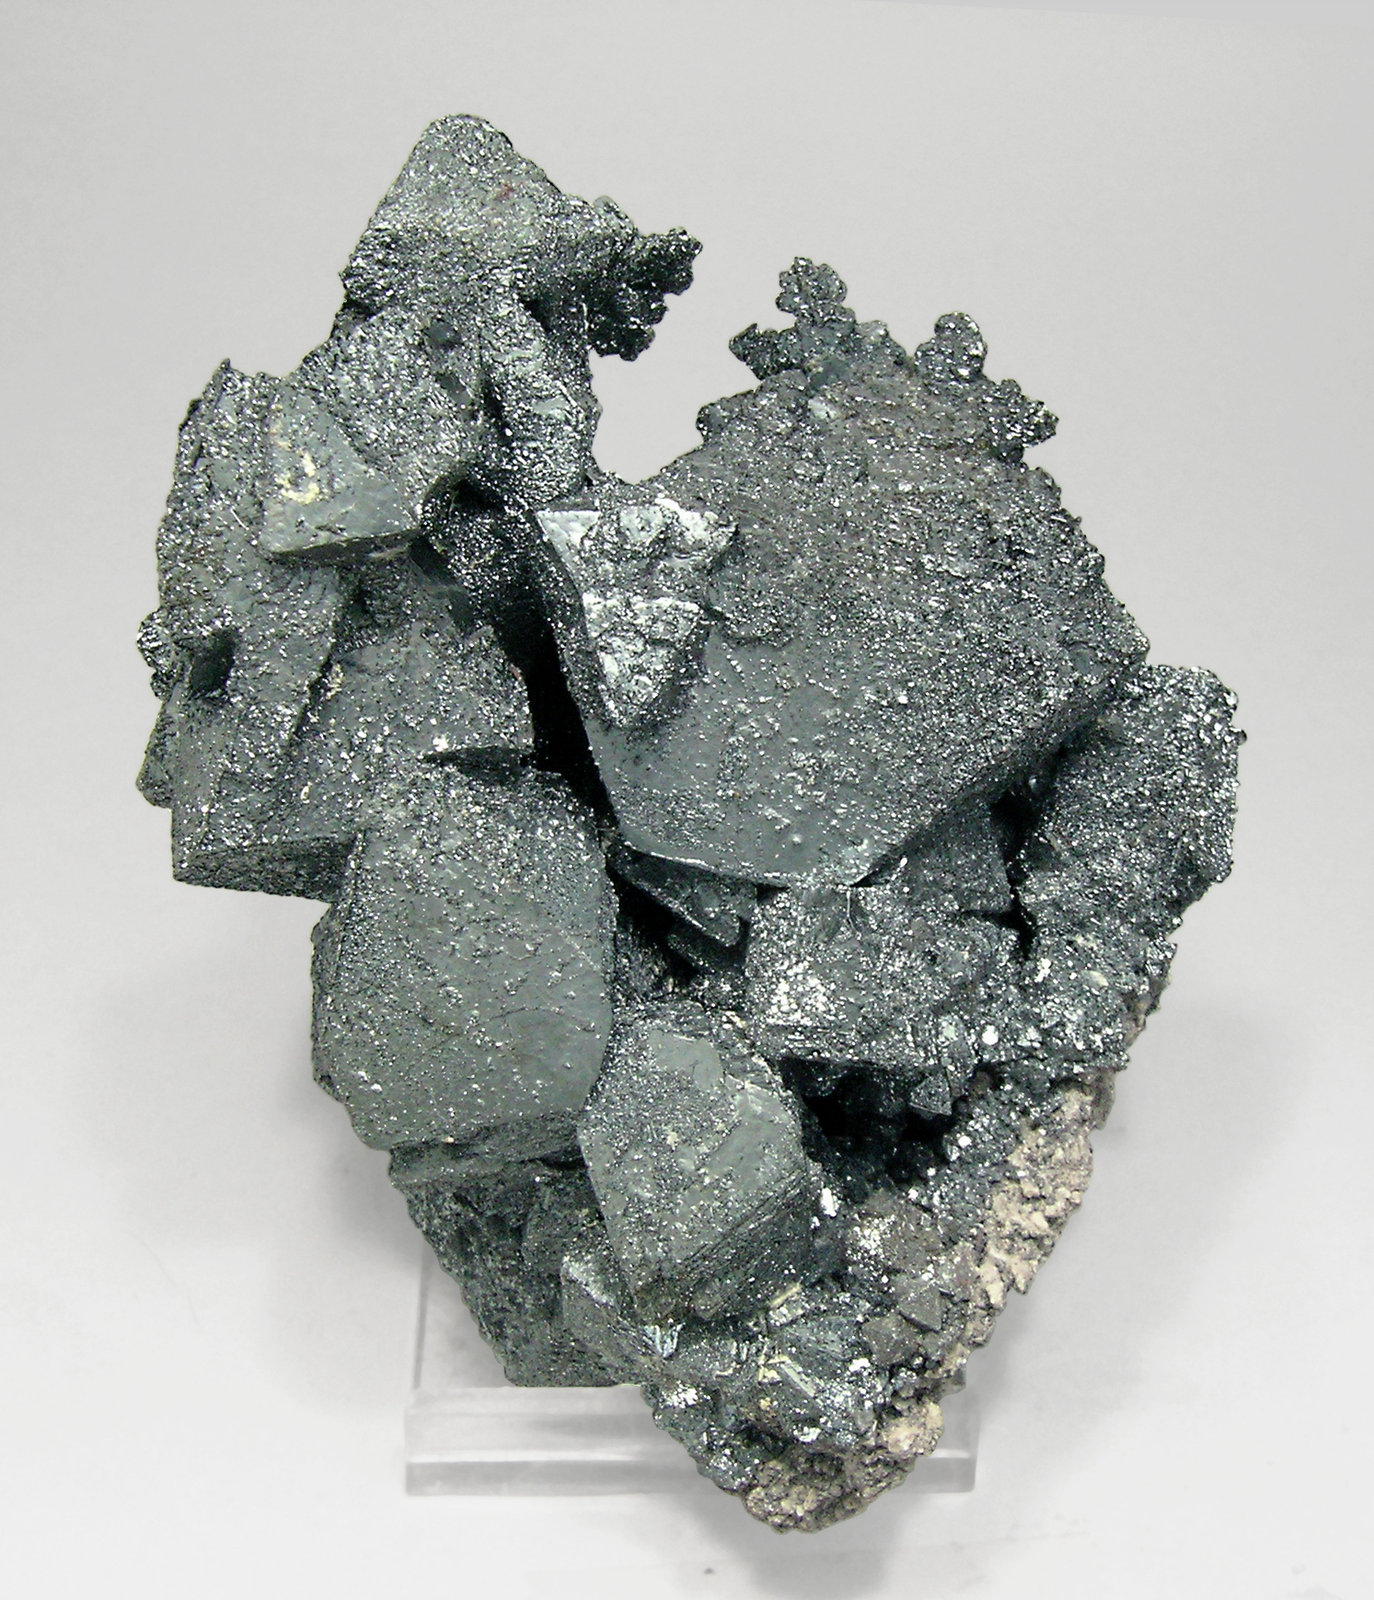 specimens/s_imagesQ1/Hematite-EL66Q1f.jpg